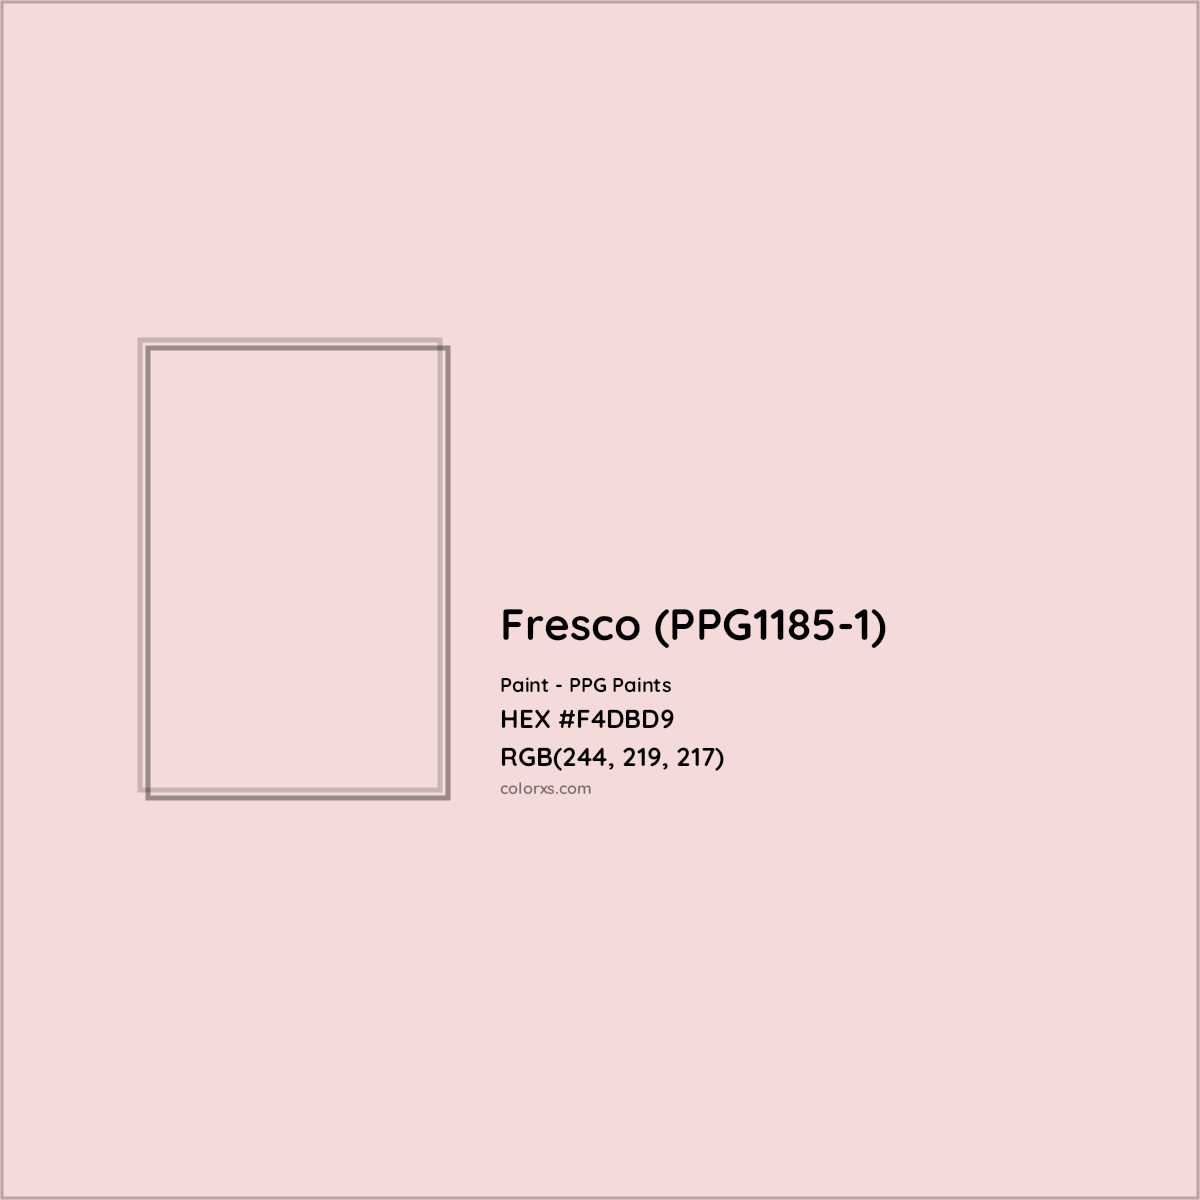 HEX #F4DBD9 Fresco (PPG1185-1) Paint PPG Paints - Color Code